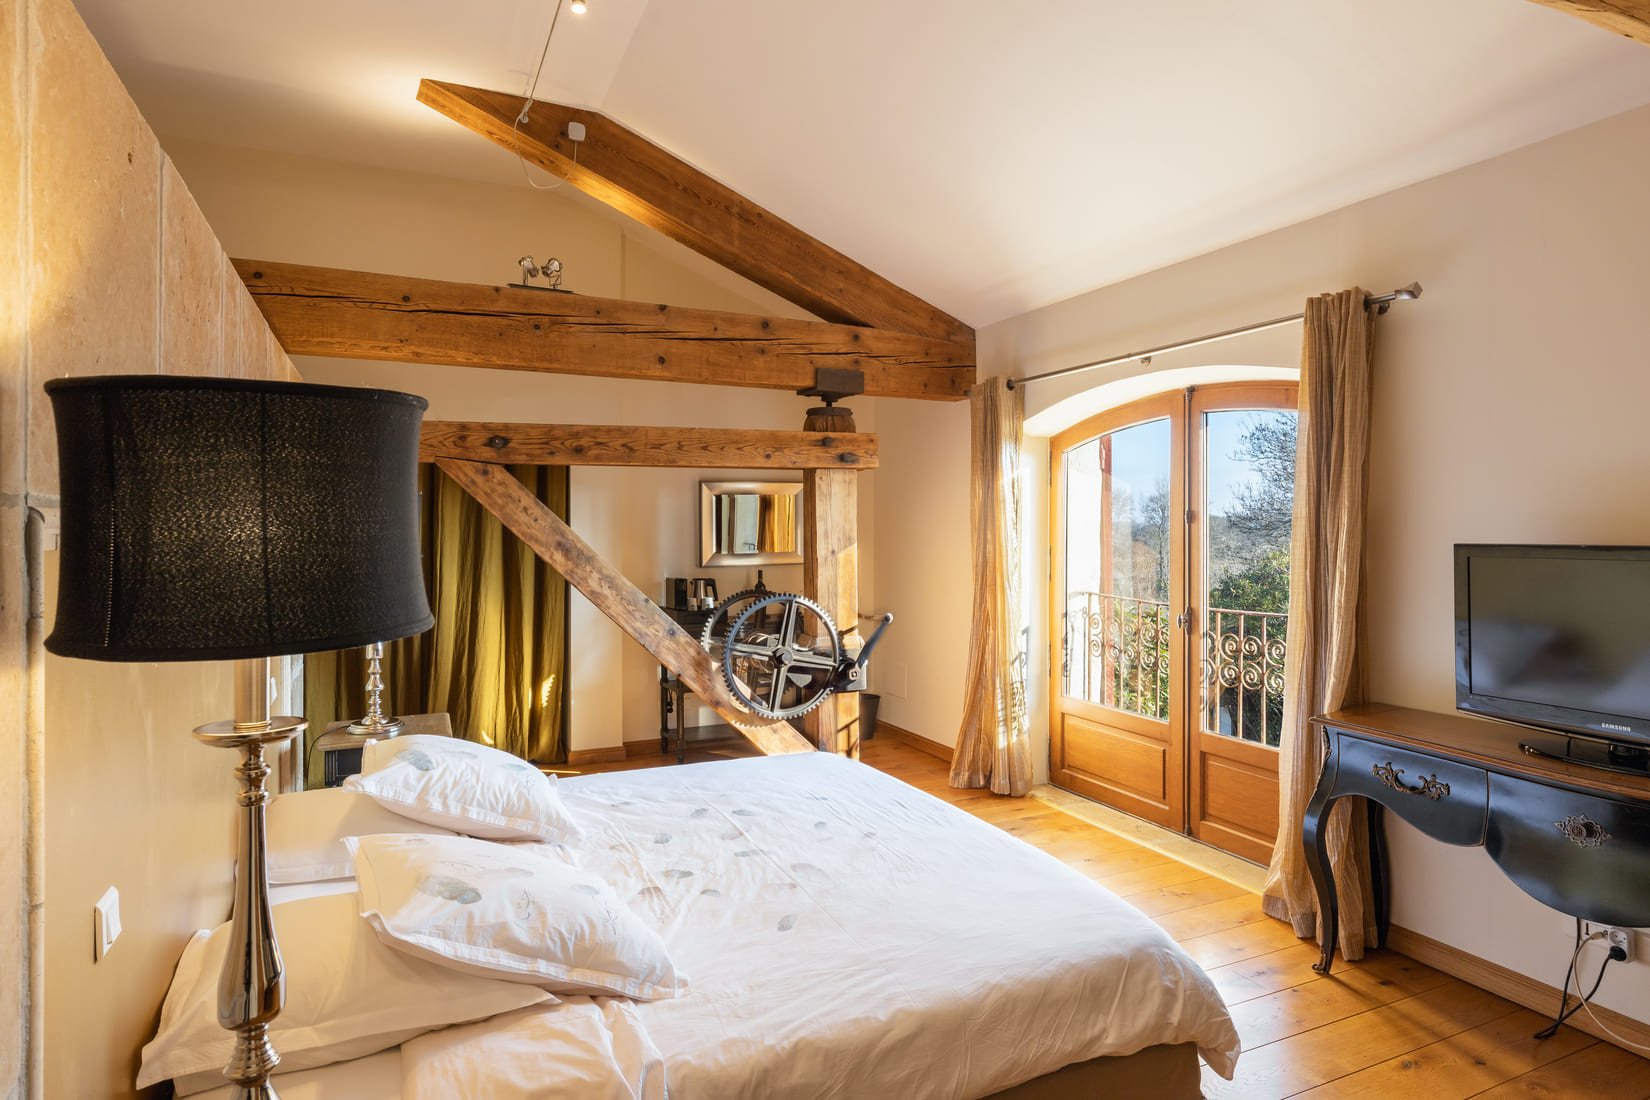 WAYA à Domaine Saint Domingue -  Narbonne- luxury room